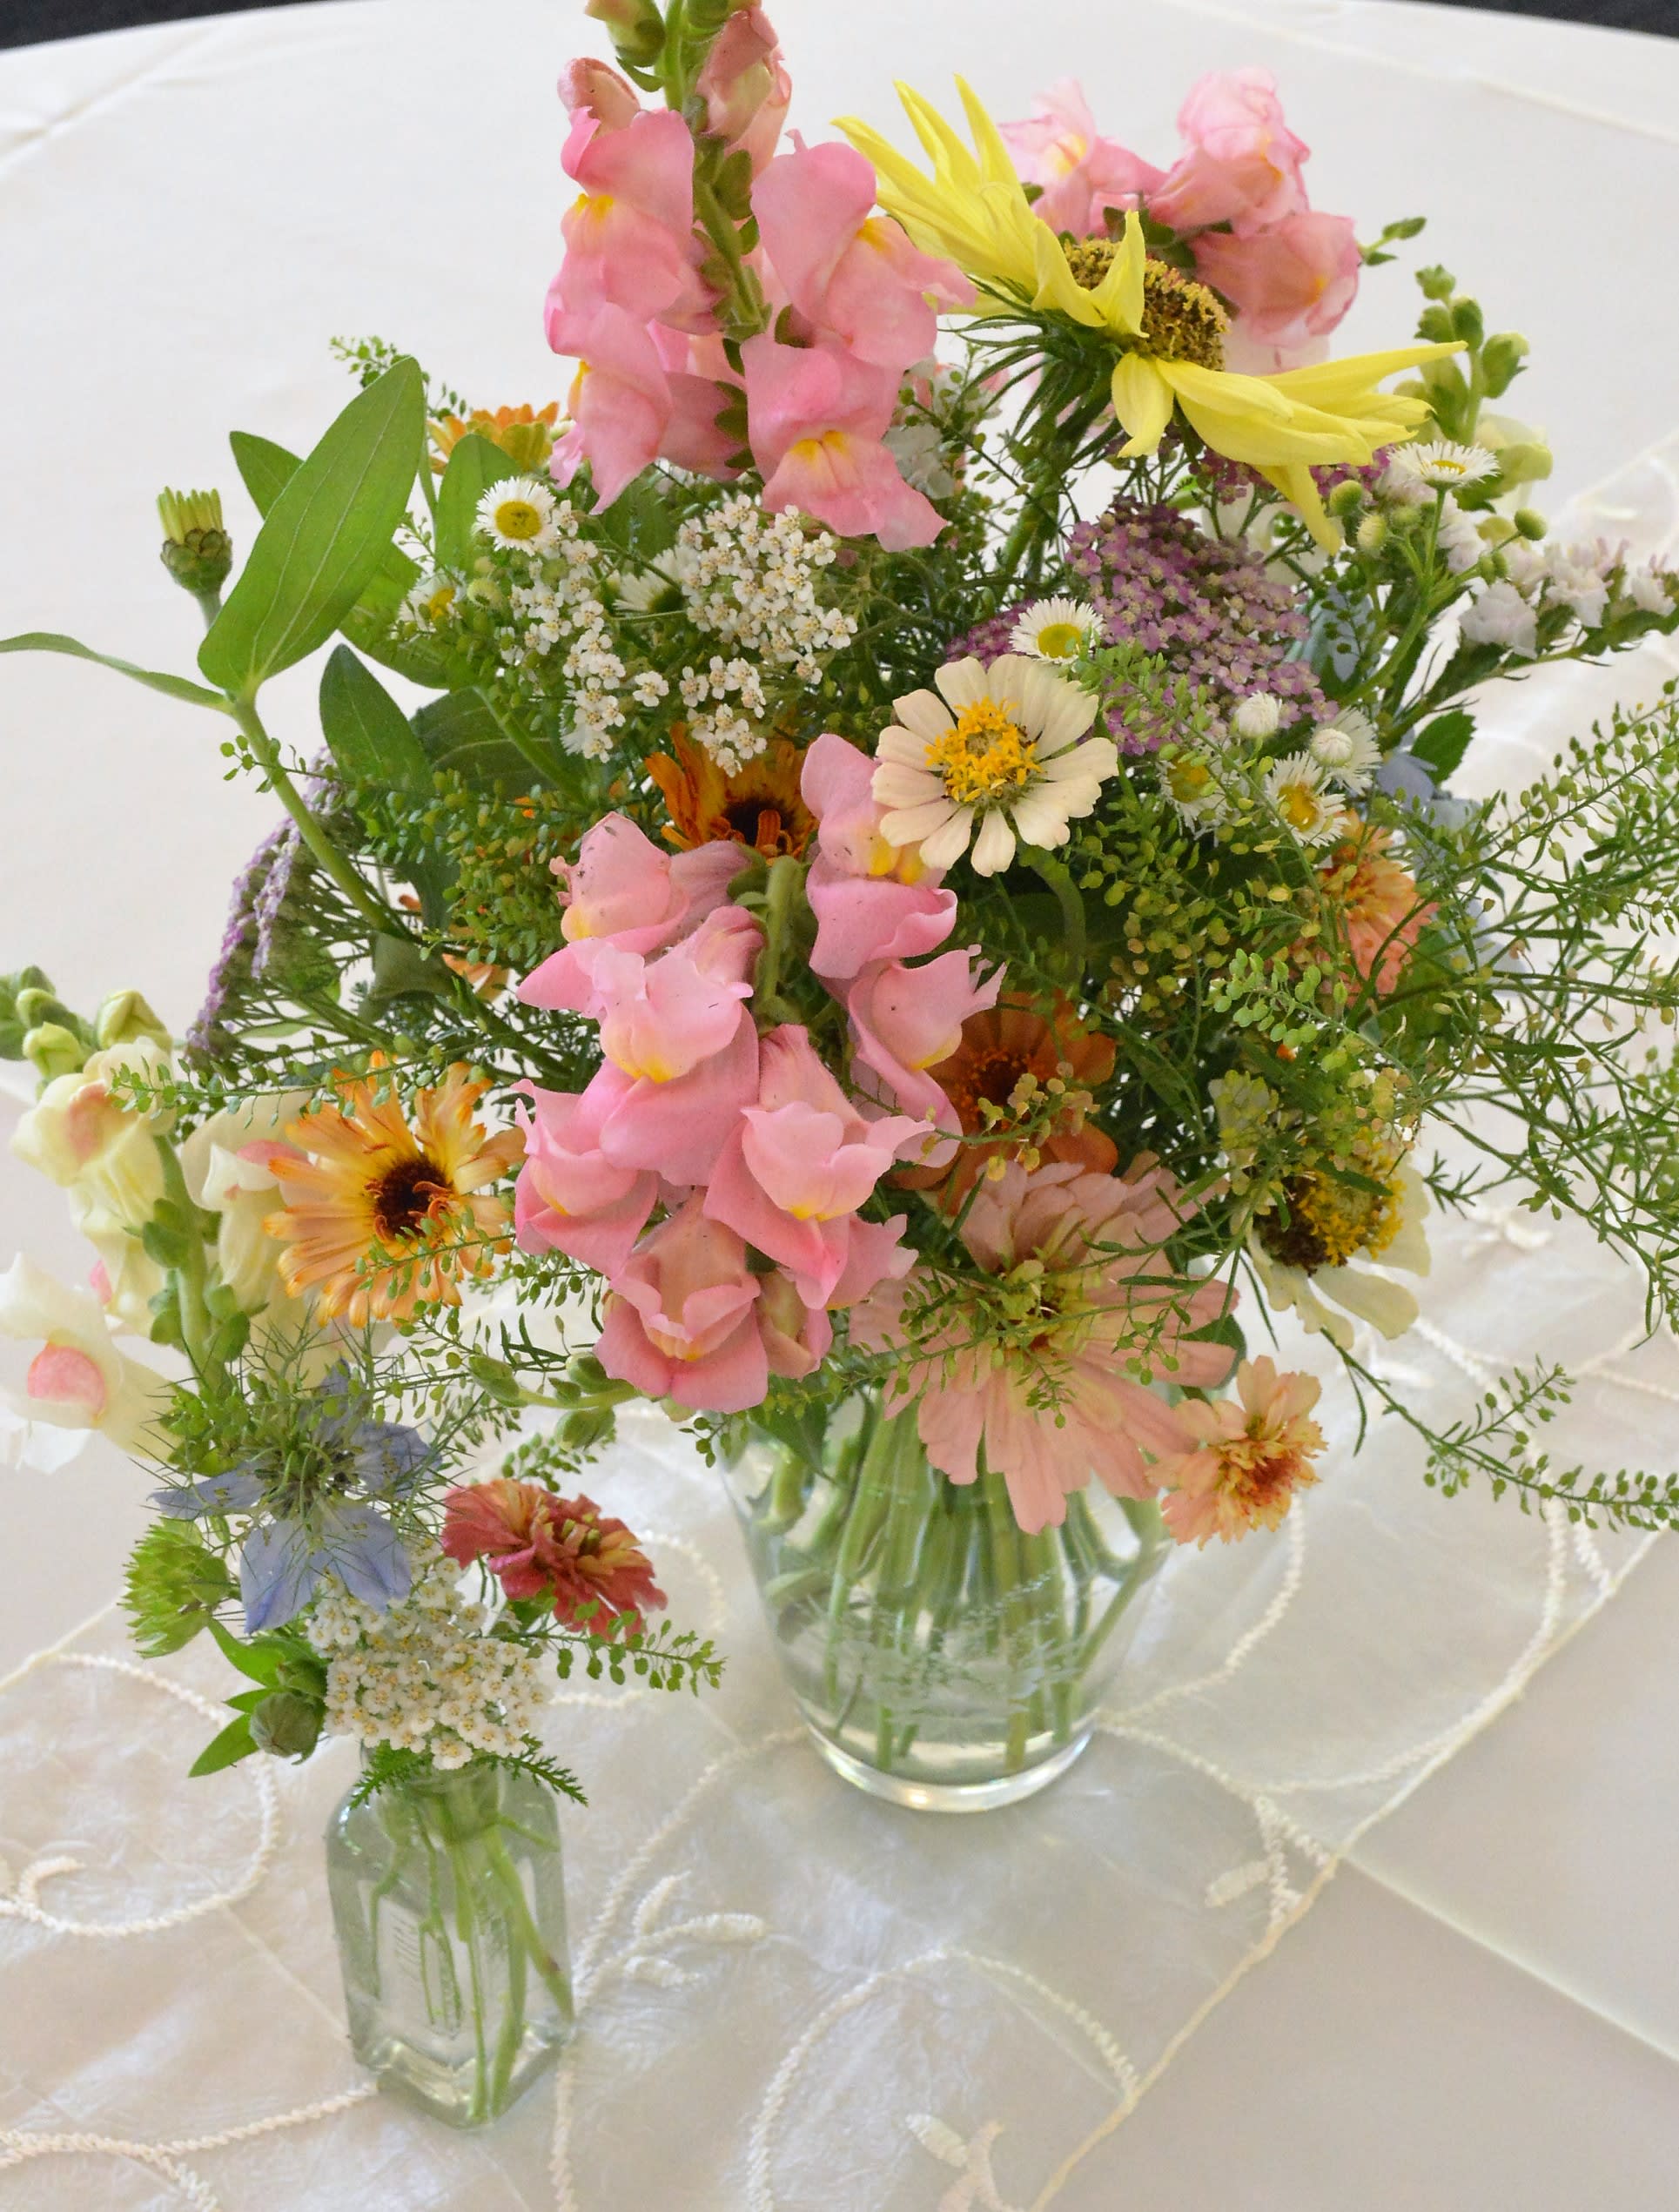 Mixed Flower Arrangement by Willow Oak Flower & Herb Farm